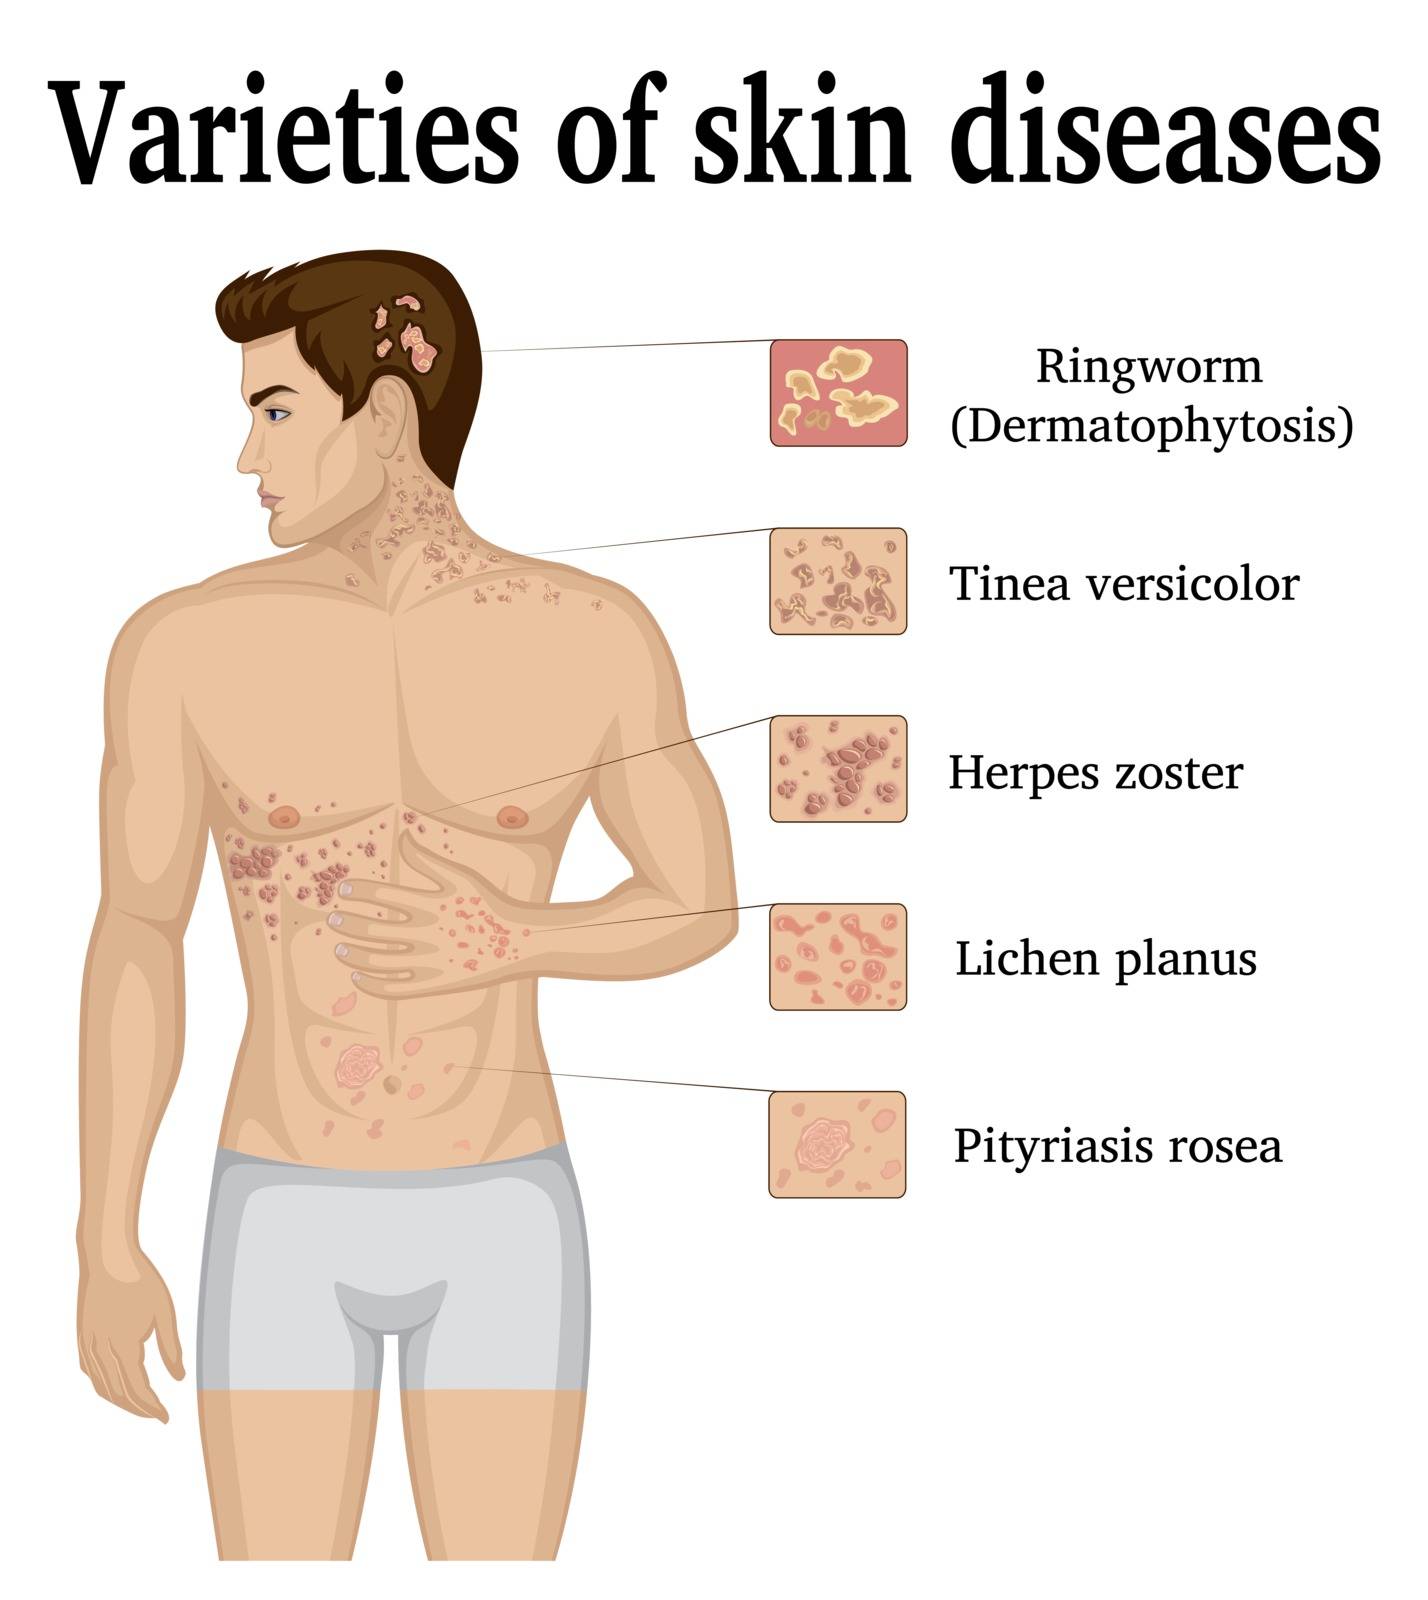 Varieties of skin diseases by Scio21